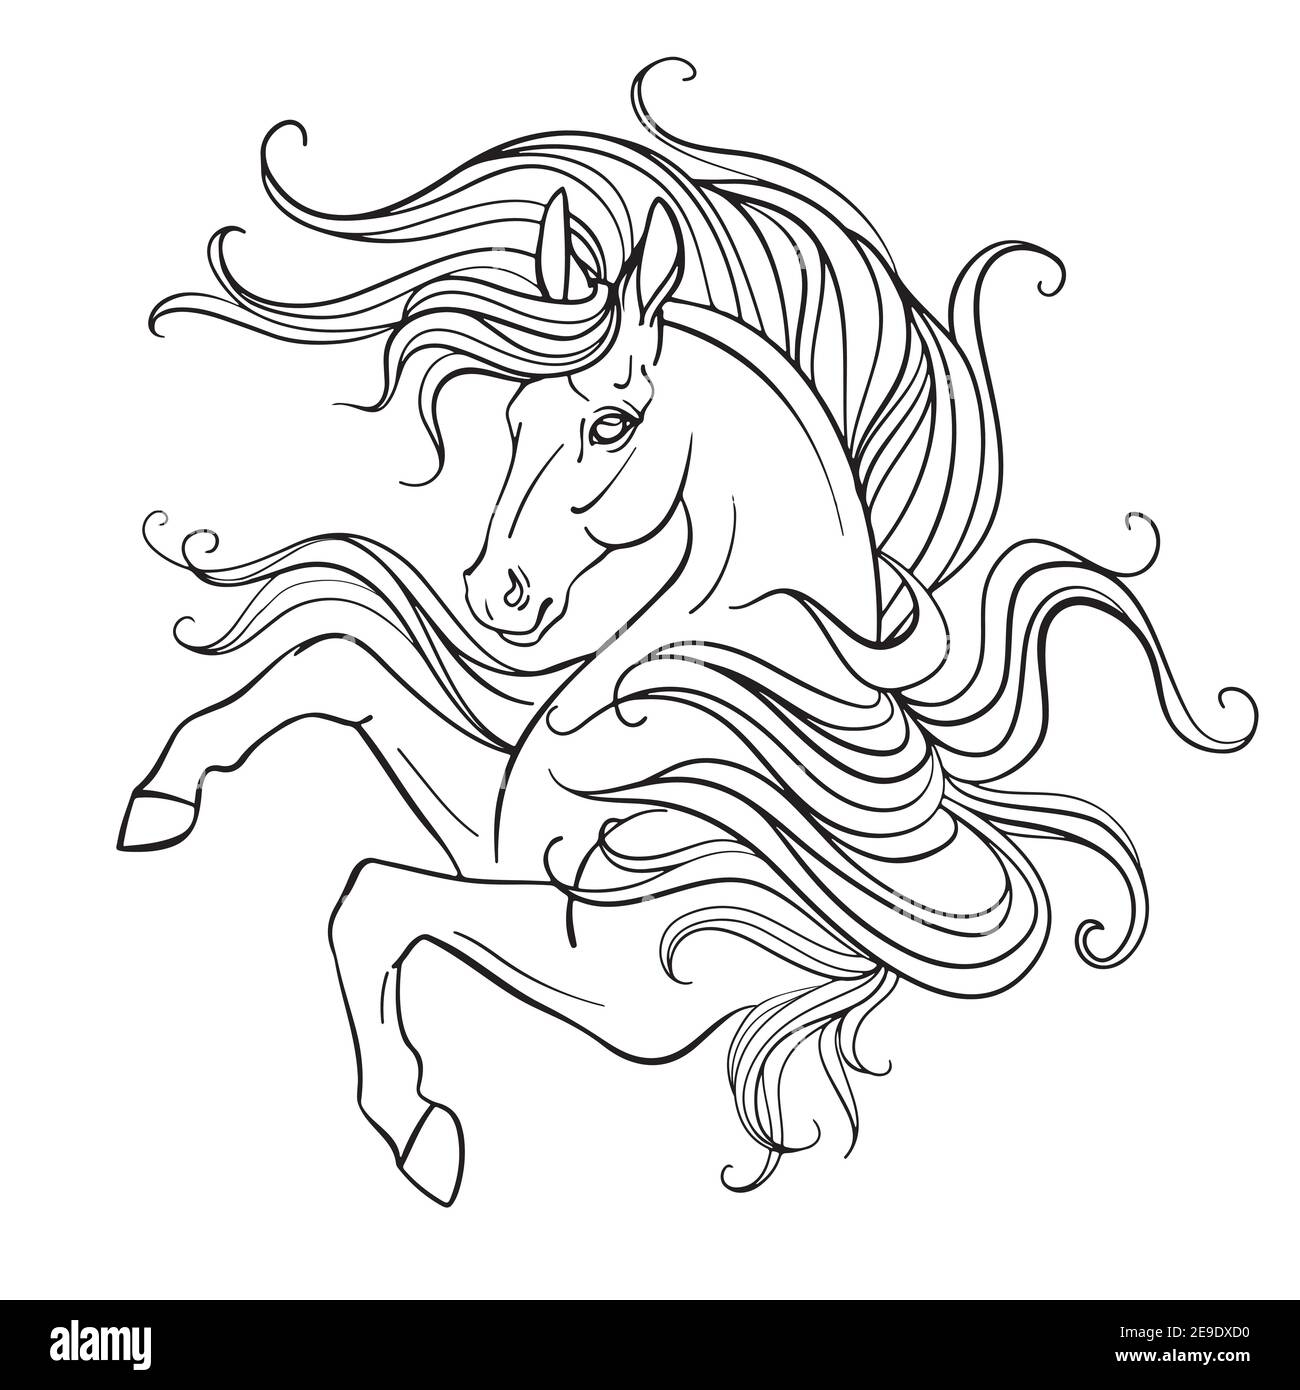 Bella unicorno con una lunga mane. Immagine vettoriale in bianco e nero del contorno per la colorazione della pagina. Per la progettazione di stampe, poster, cartoline, colori Illustrazione Vettoriale